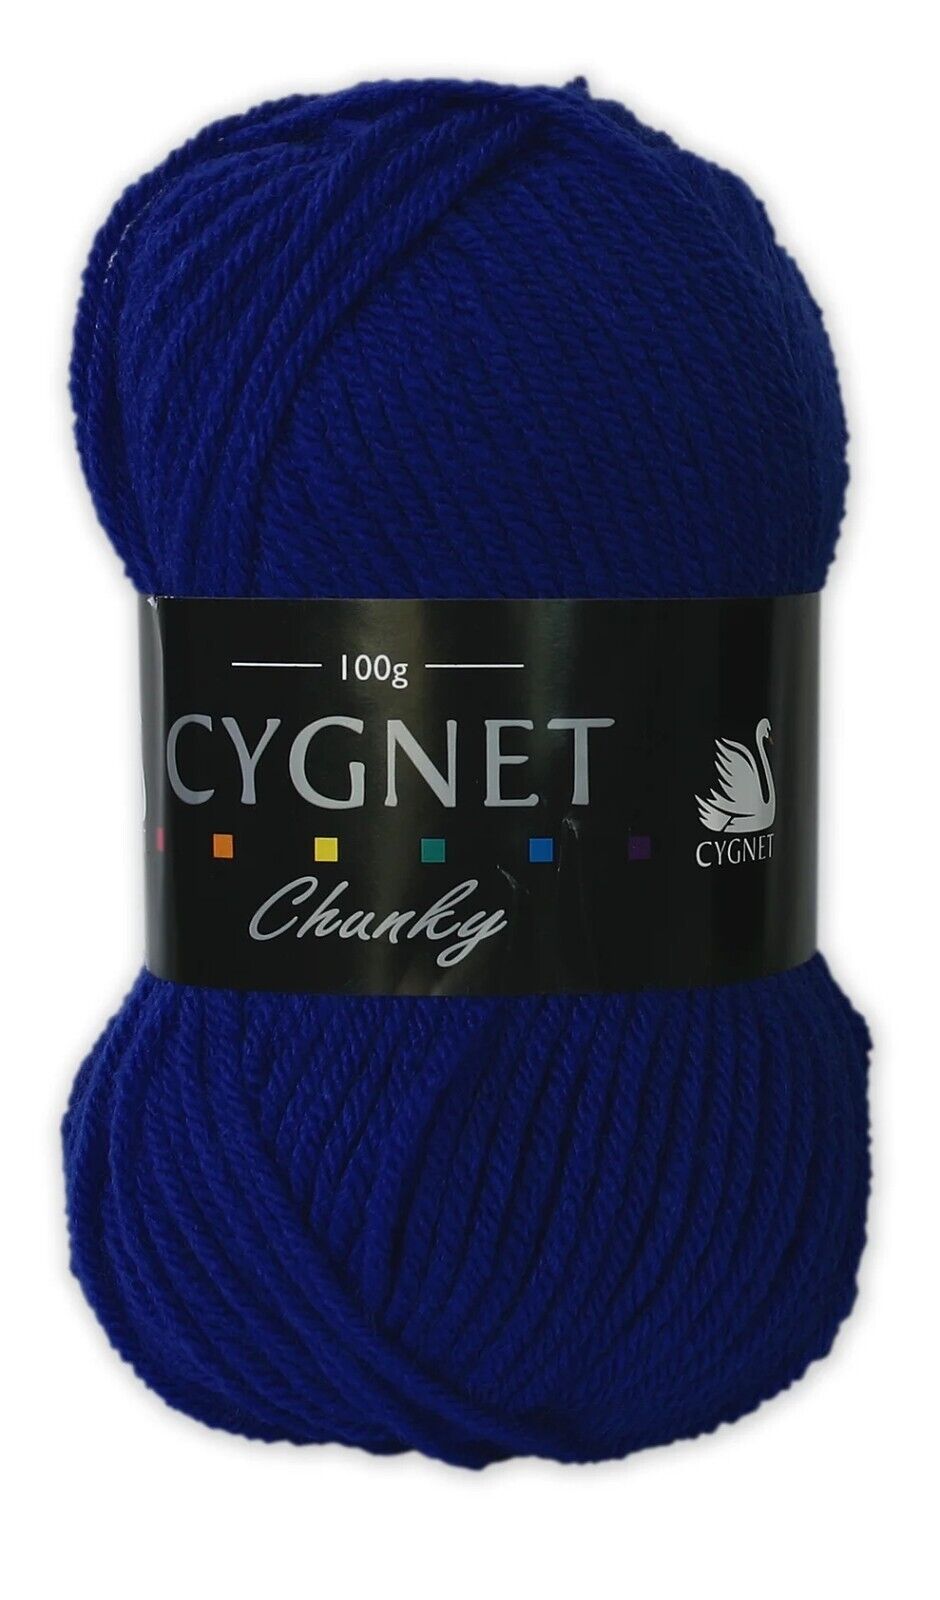 Cygnet CHUNKY Knitting Yarn / Wool - 100g Chunky Knit Ball - Royal